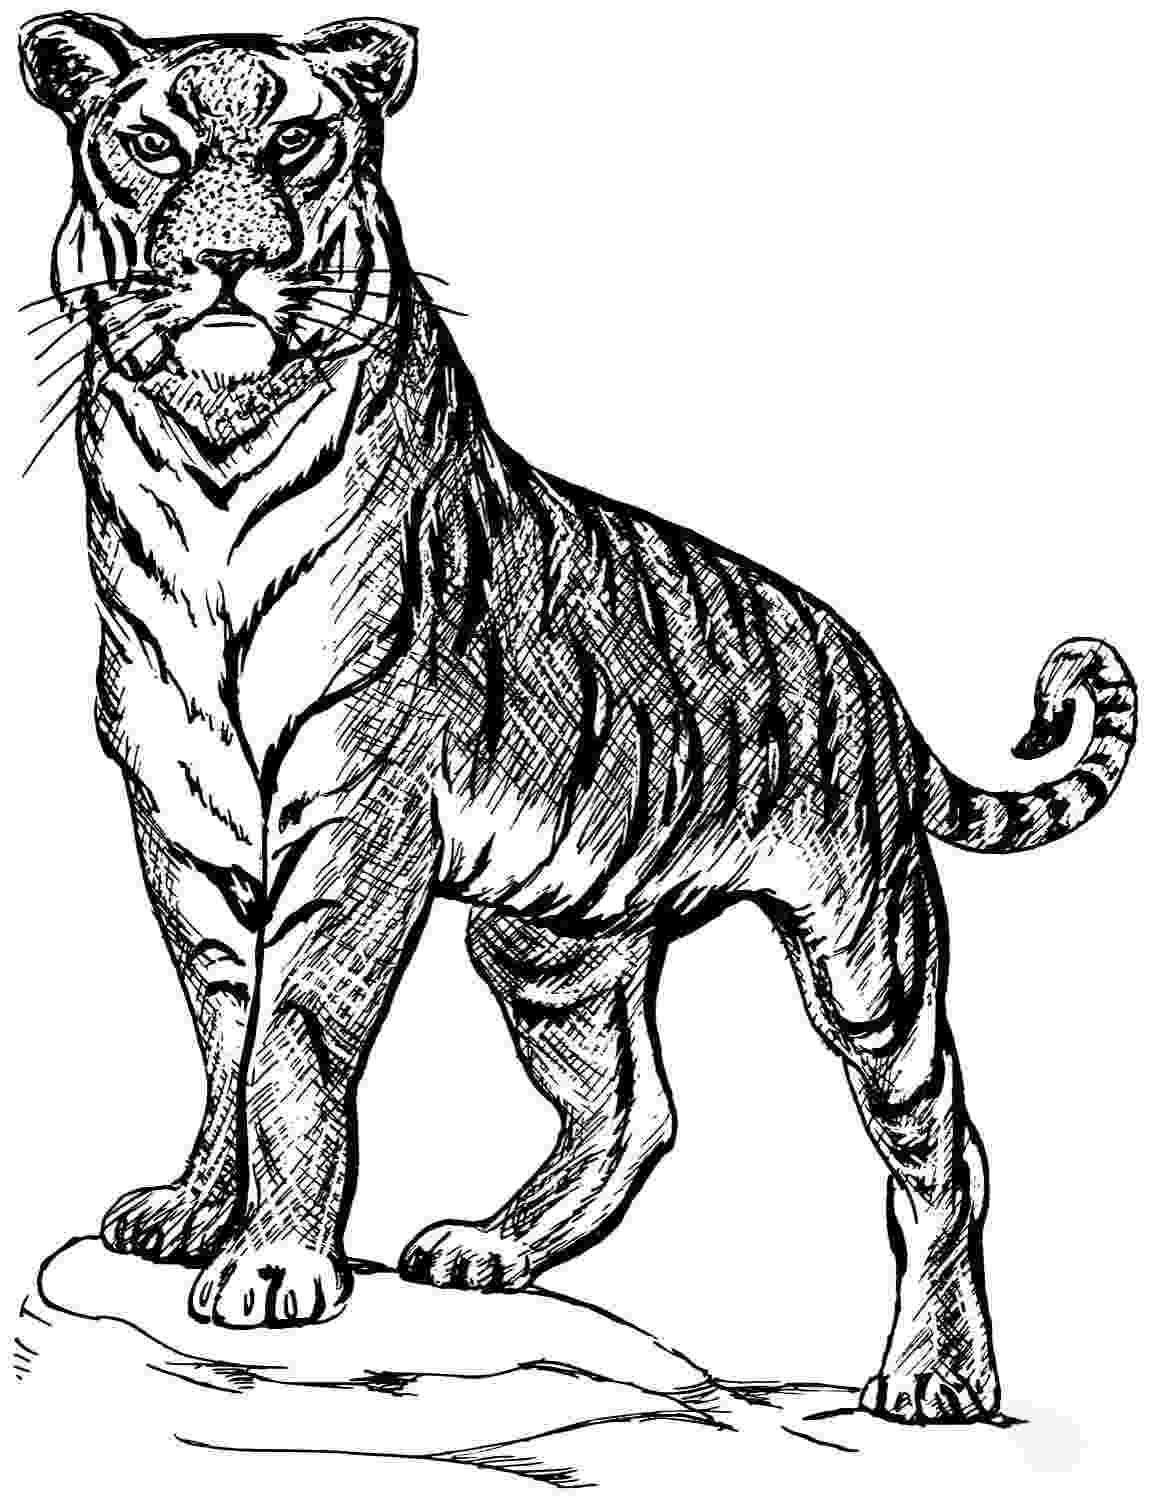 У Тигра очень мощная стойка от Тигра.